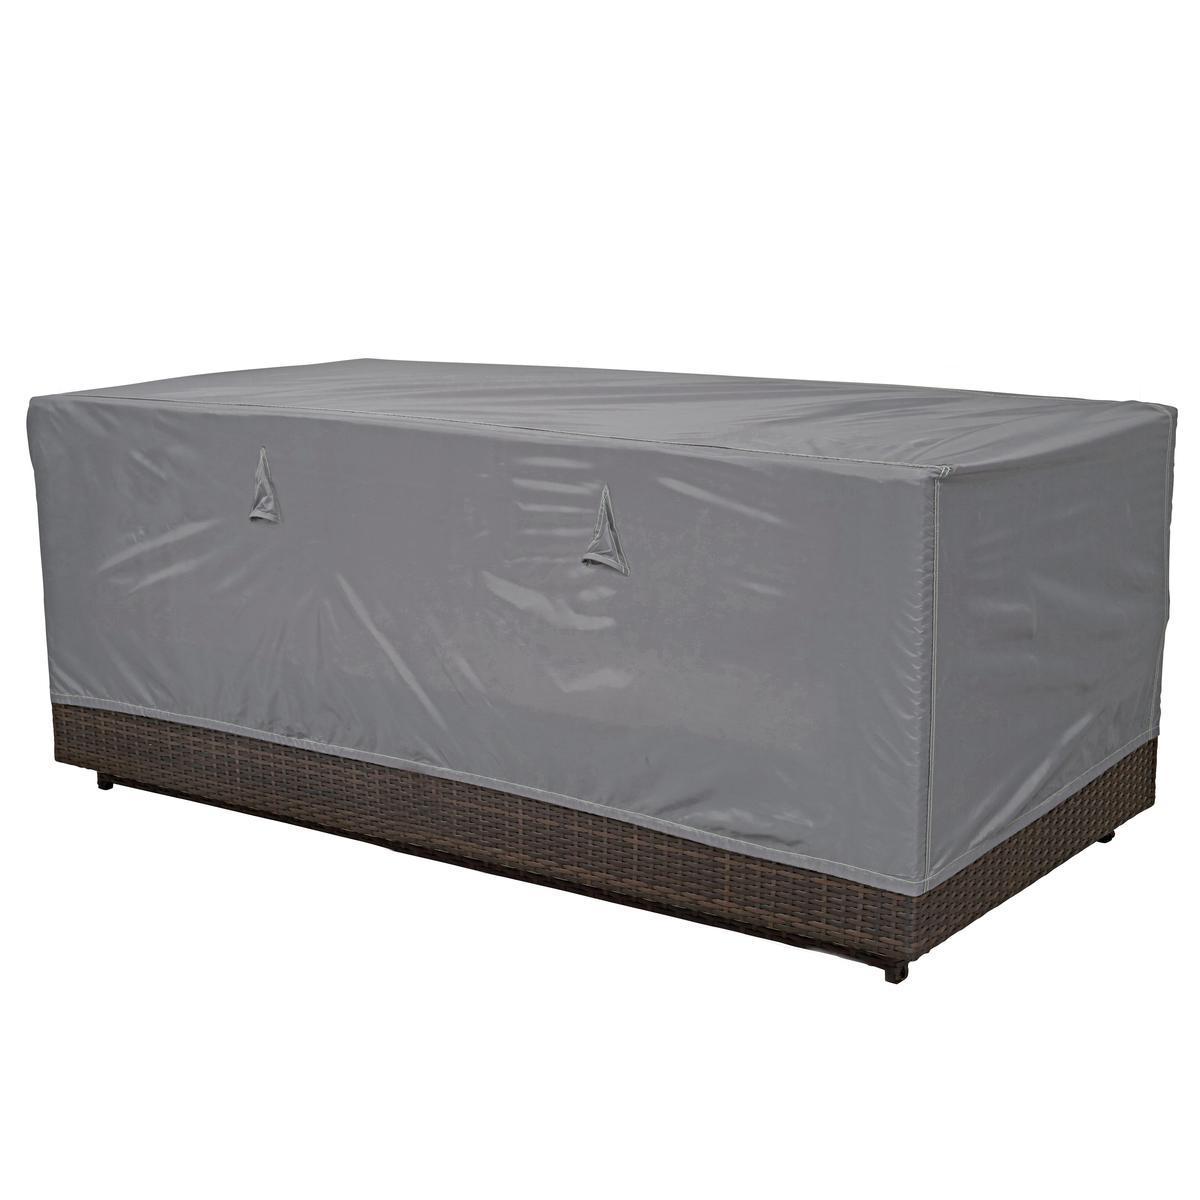 Housse de protection pour canapé 3 places - 205 x 75 x 60 cm - Gris - COV'UP